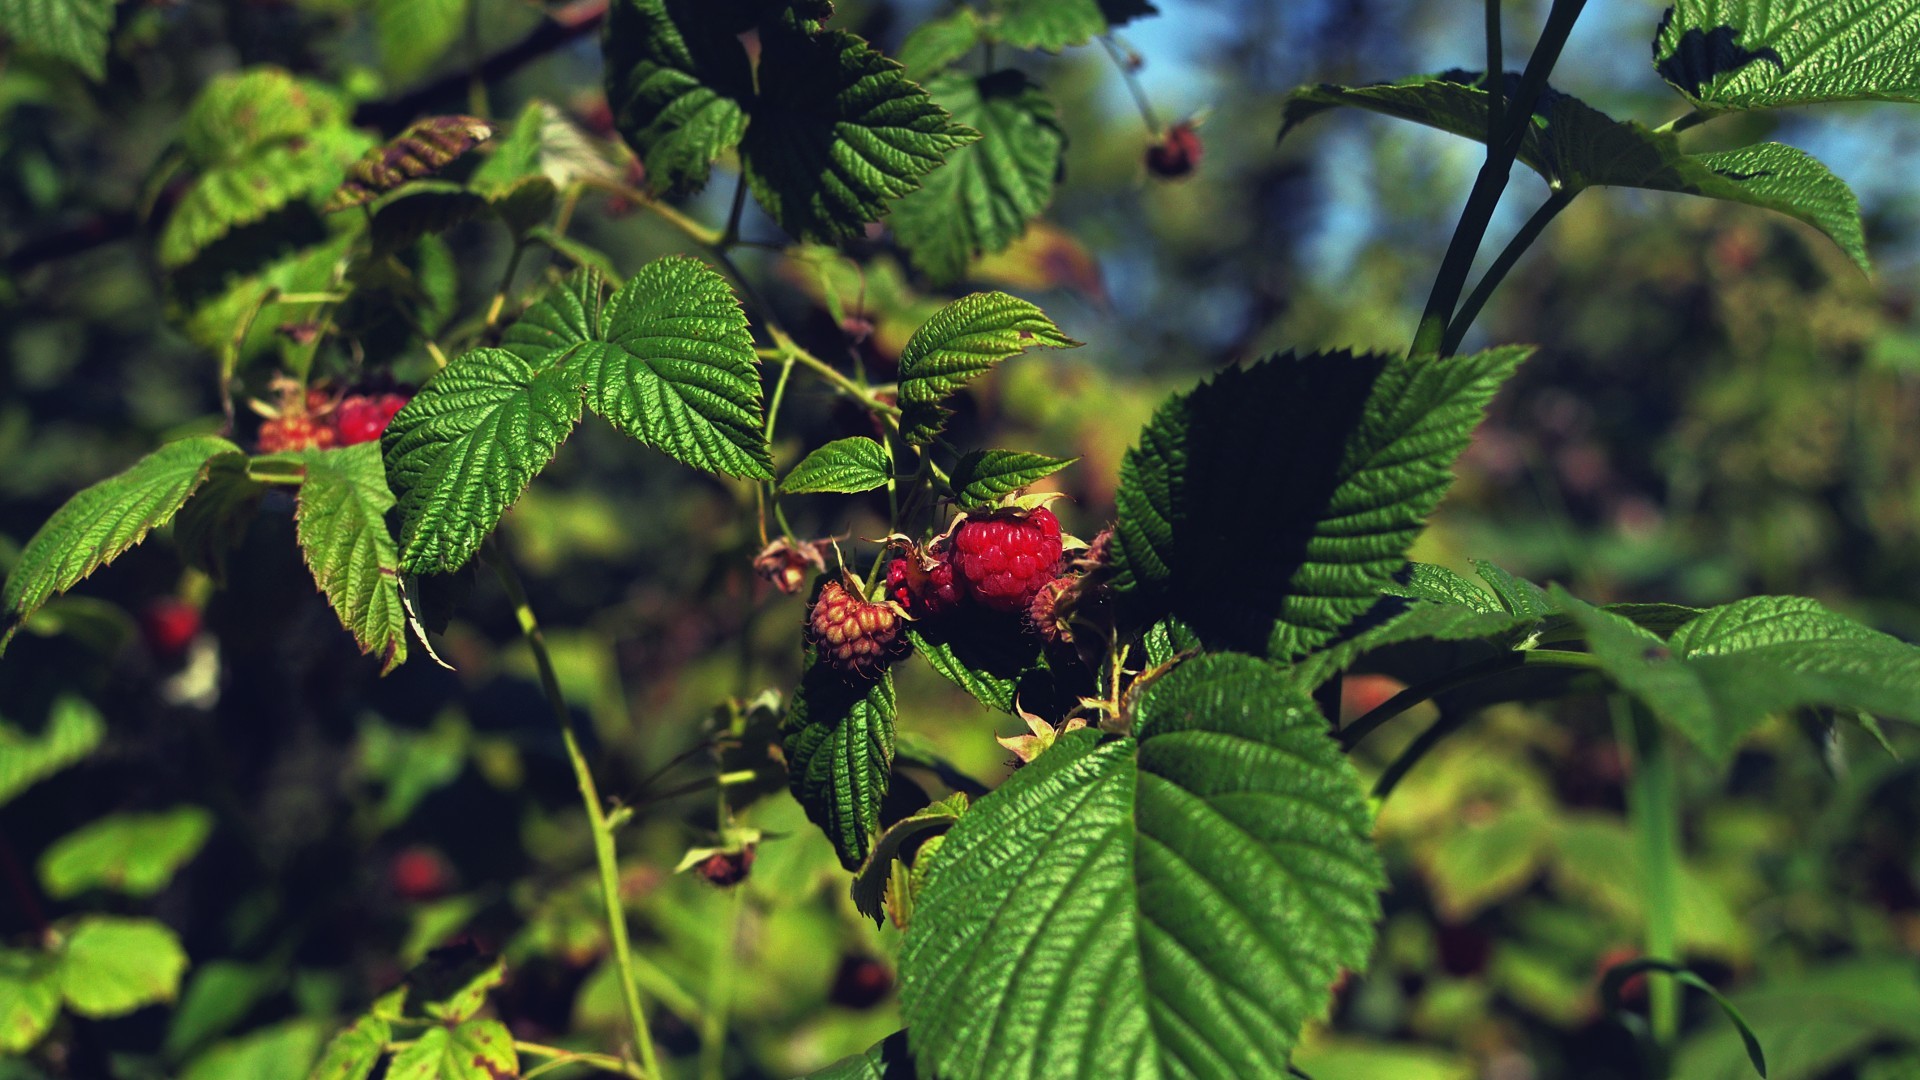 General 1920x1080 raspberries plants fruit leaves summer food berries outdoors